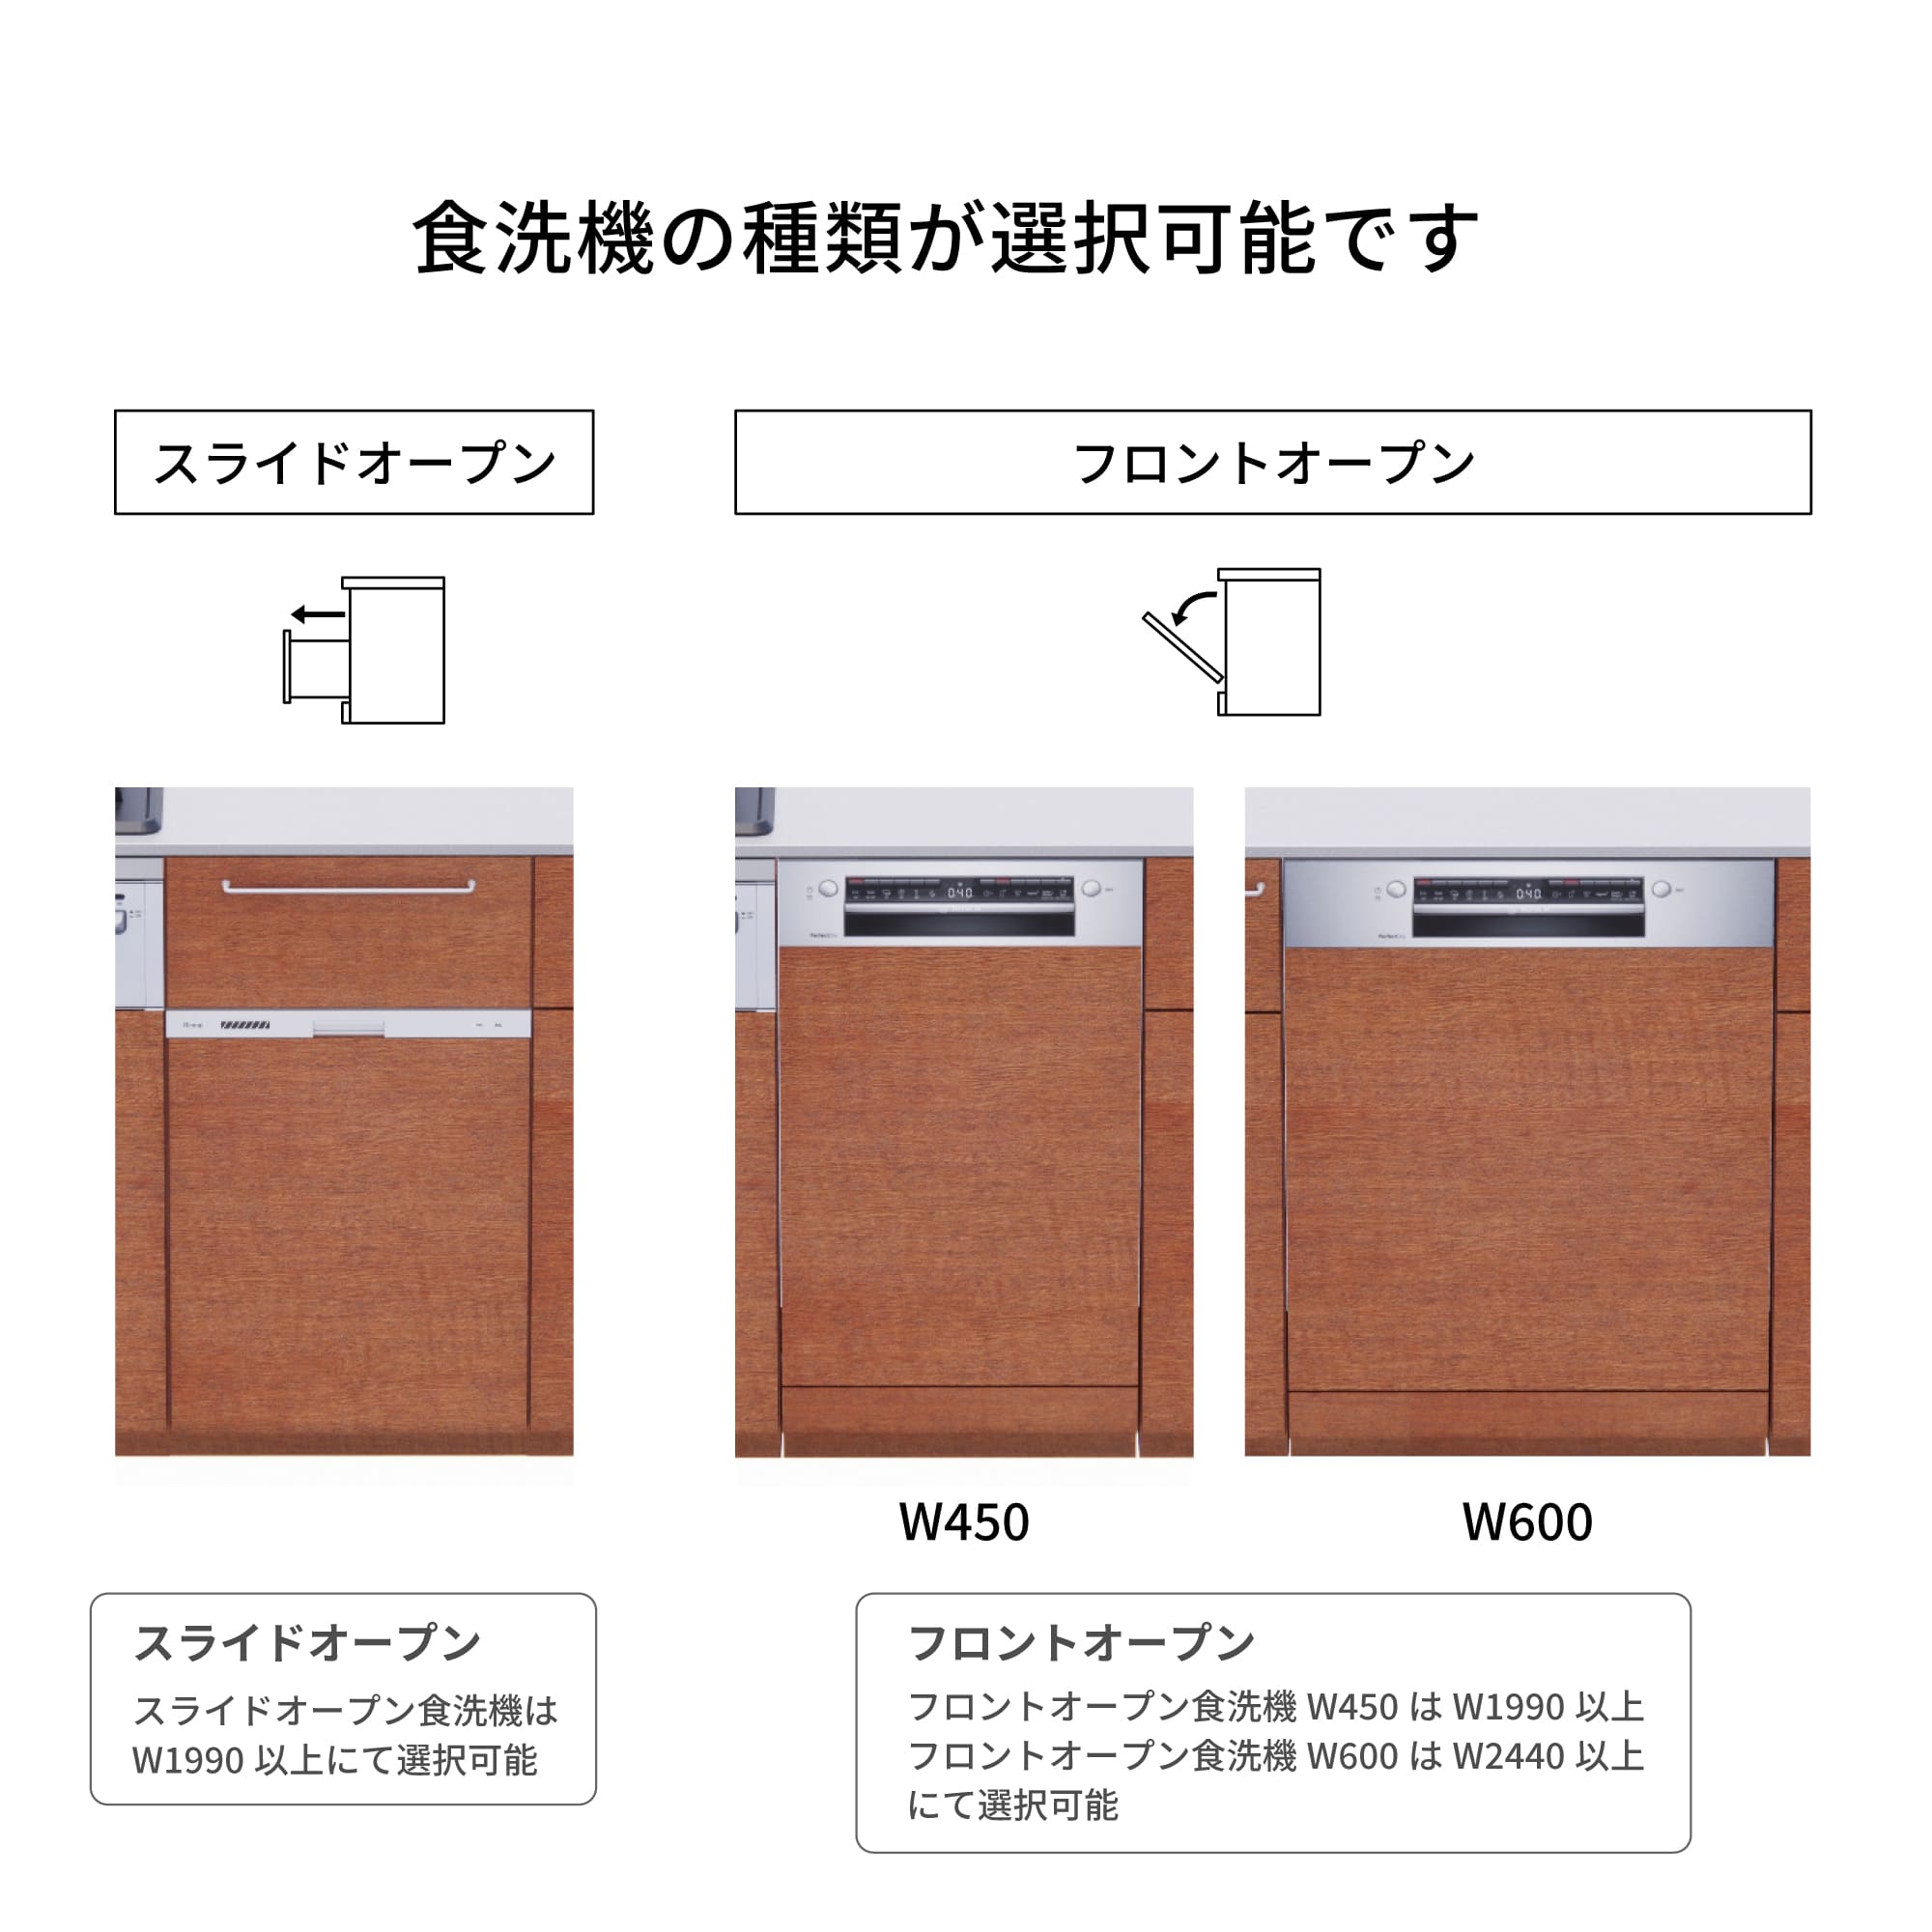 木製システムキッチン 対面型 W2440～2740・コンロあり / オーブンあり / 食洗機あり KB-KC022-46-G183 食洗機が選択できます